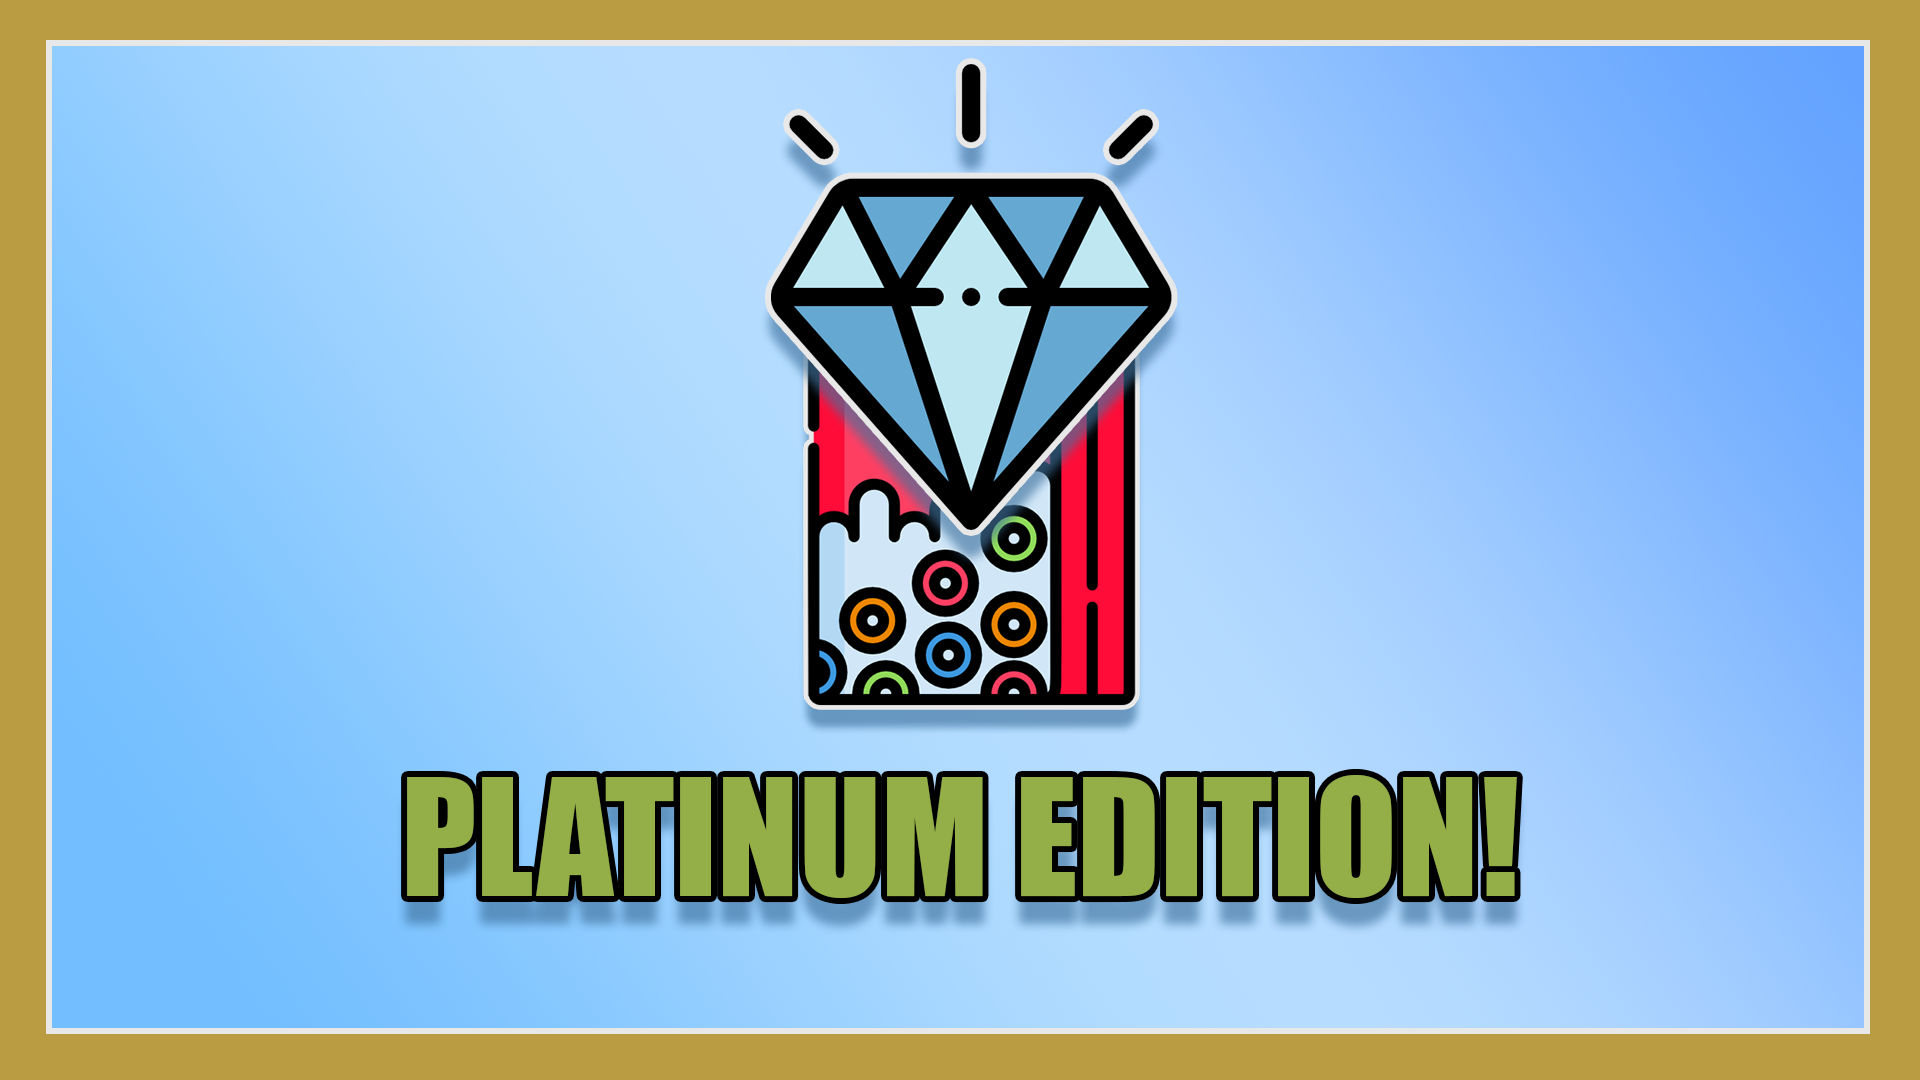 Platinum Edition!